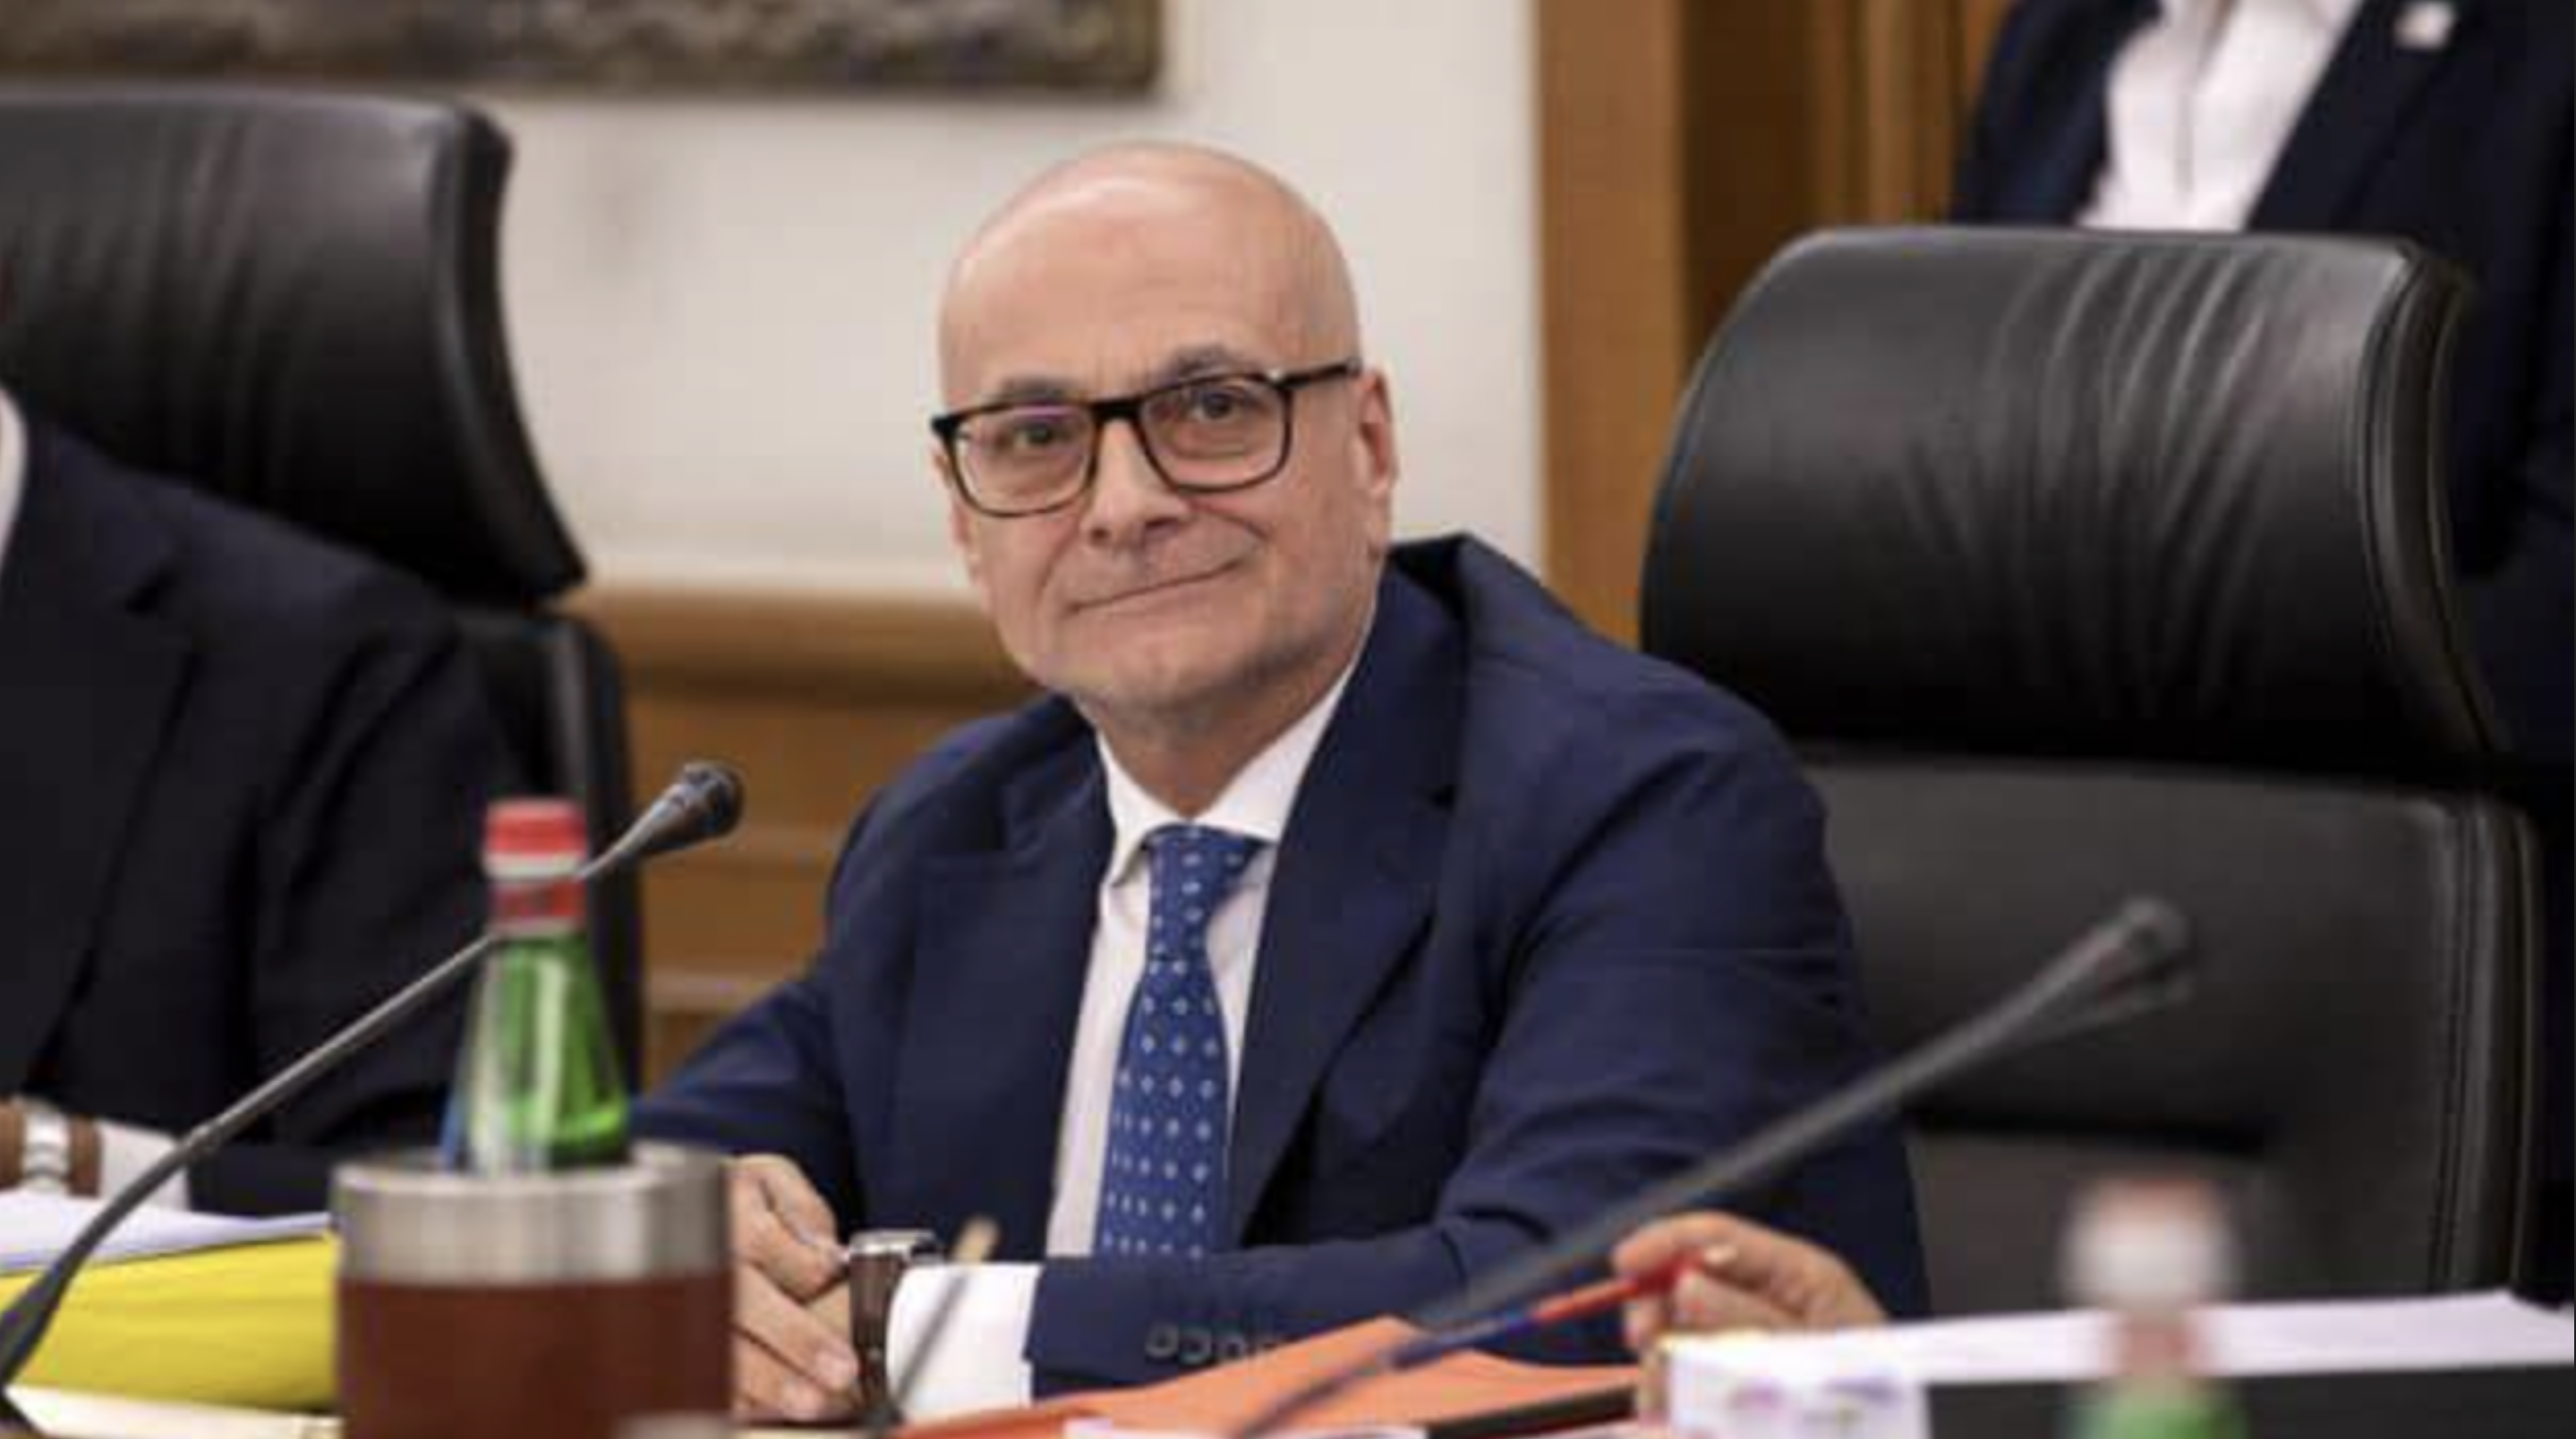 Antonio D'Amato procuratore capo di Messina